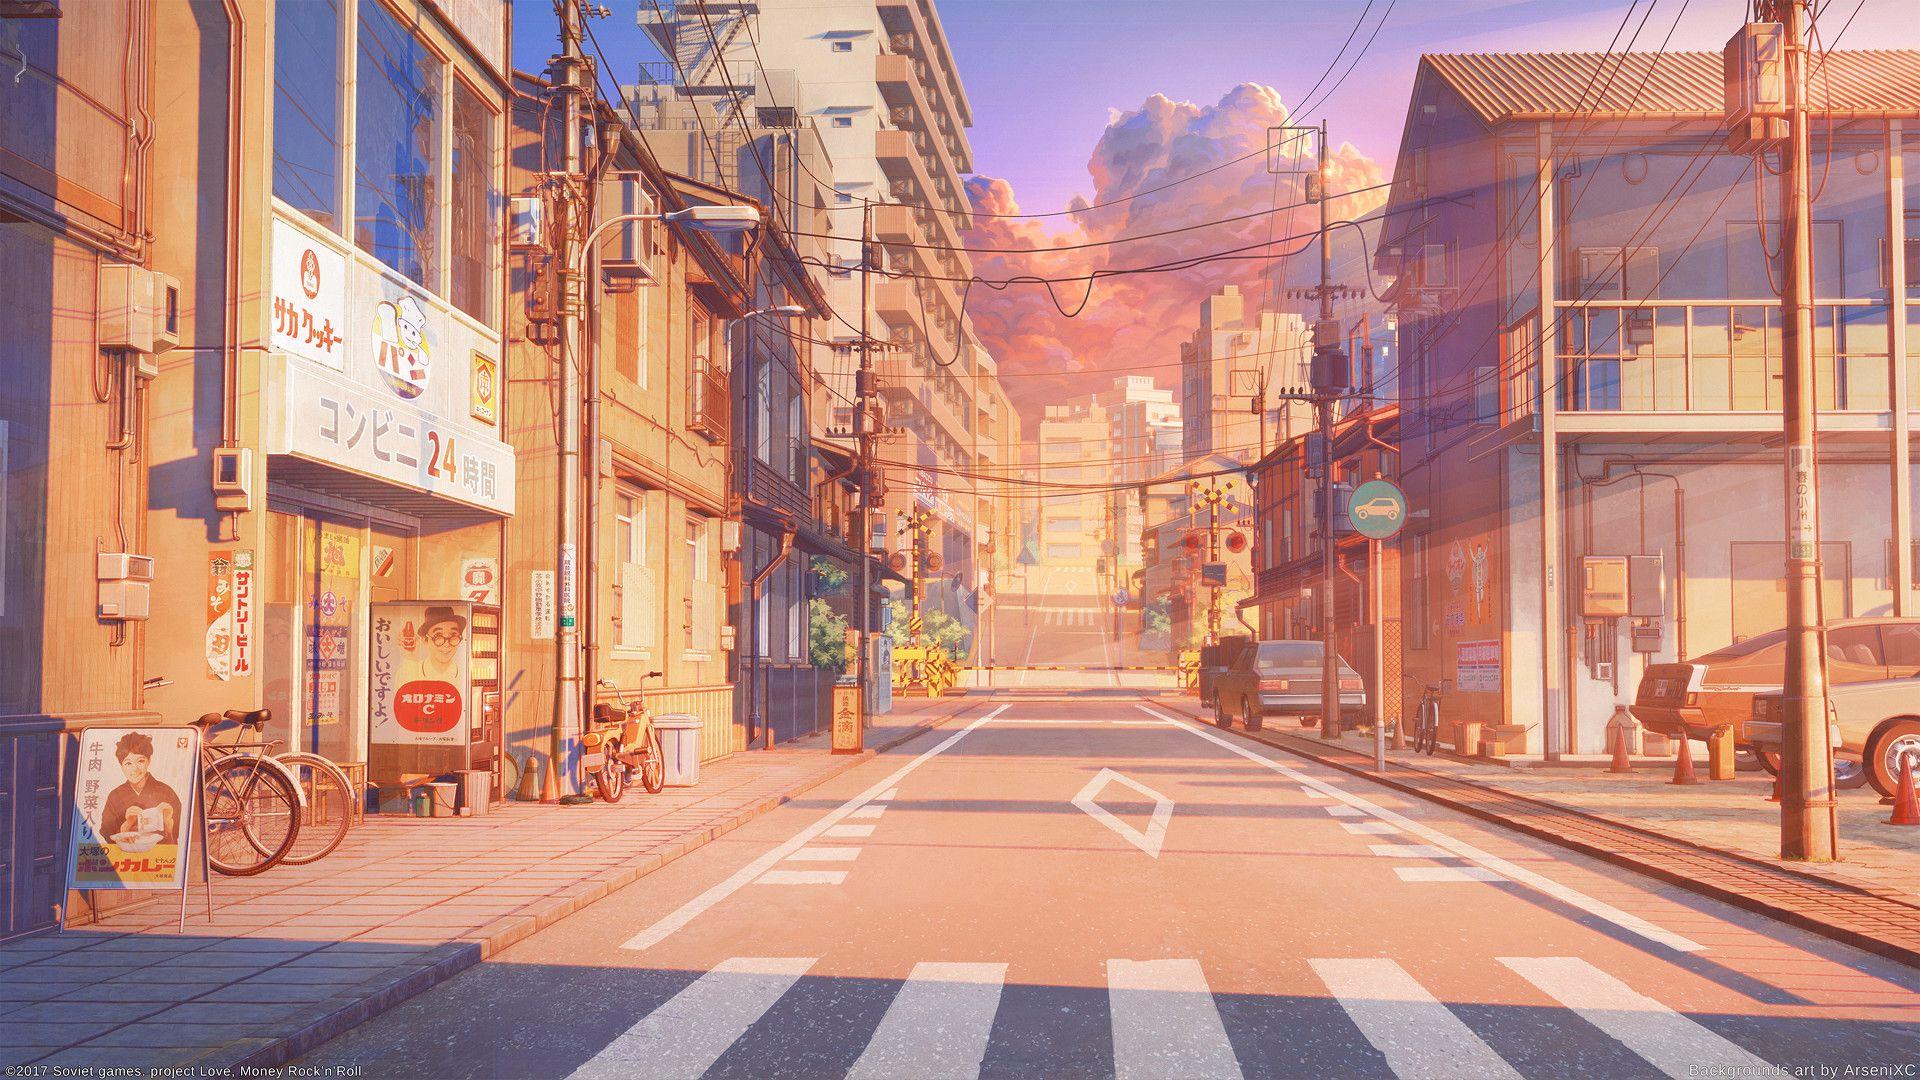 Làm mới màn hình của bạn với hình ảnh Anime Street độ phân giải 4K sắc nét. Cùng những chi tiết tinh tế và ánh sáng chuyên nghiệp, bức ảnh là điểm nhấn tuyệt vời cho phong cách độc đáo của bạn.